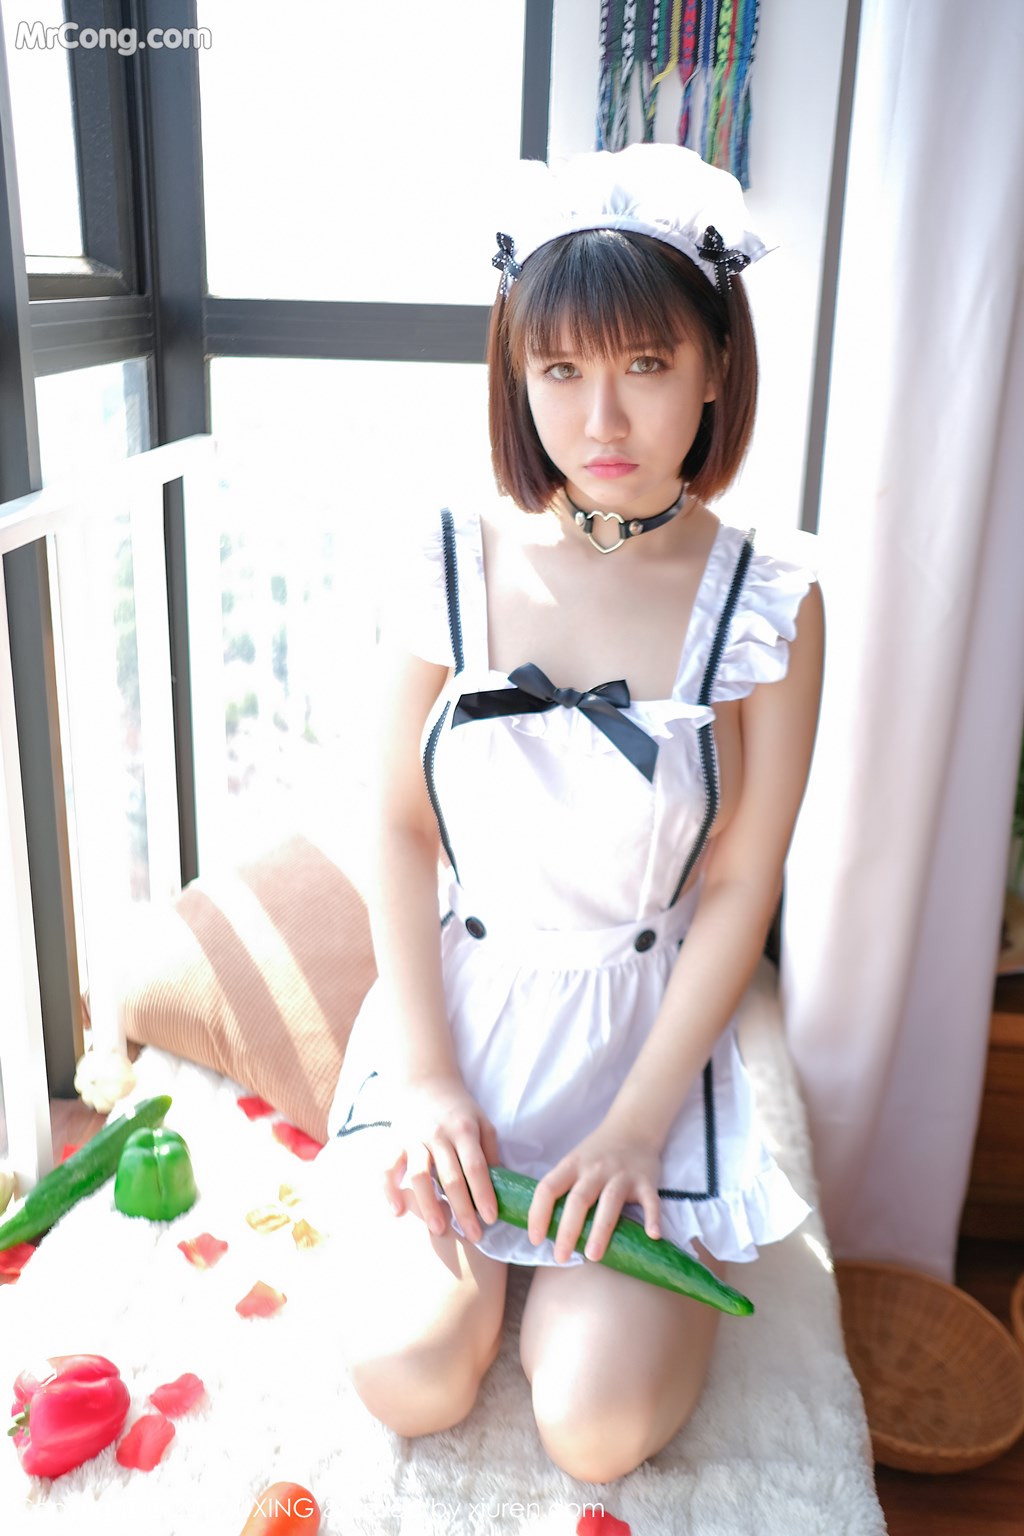 UXING Vol.058: Model Aojiao Meng Meng (K8 傲 娇 萌萌 Vivian) (35 photos) photo 2-1